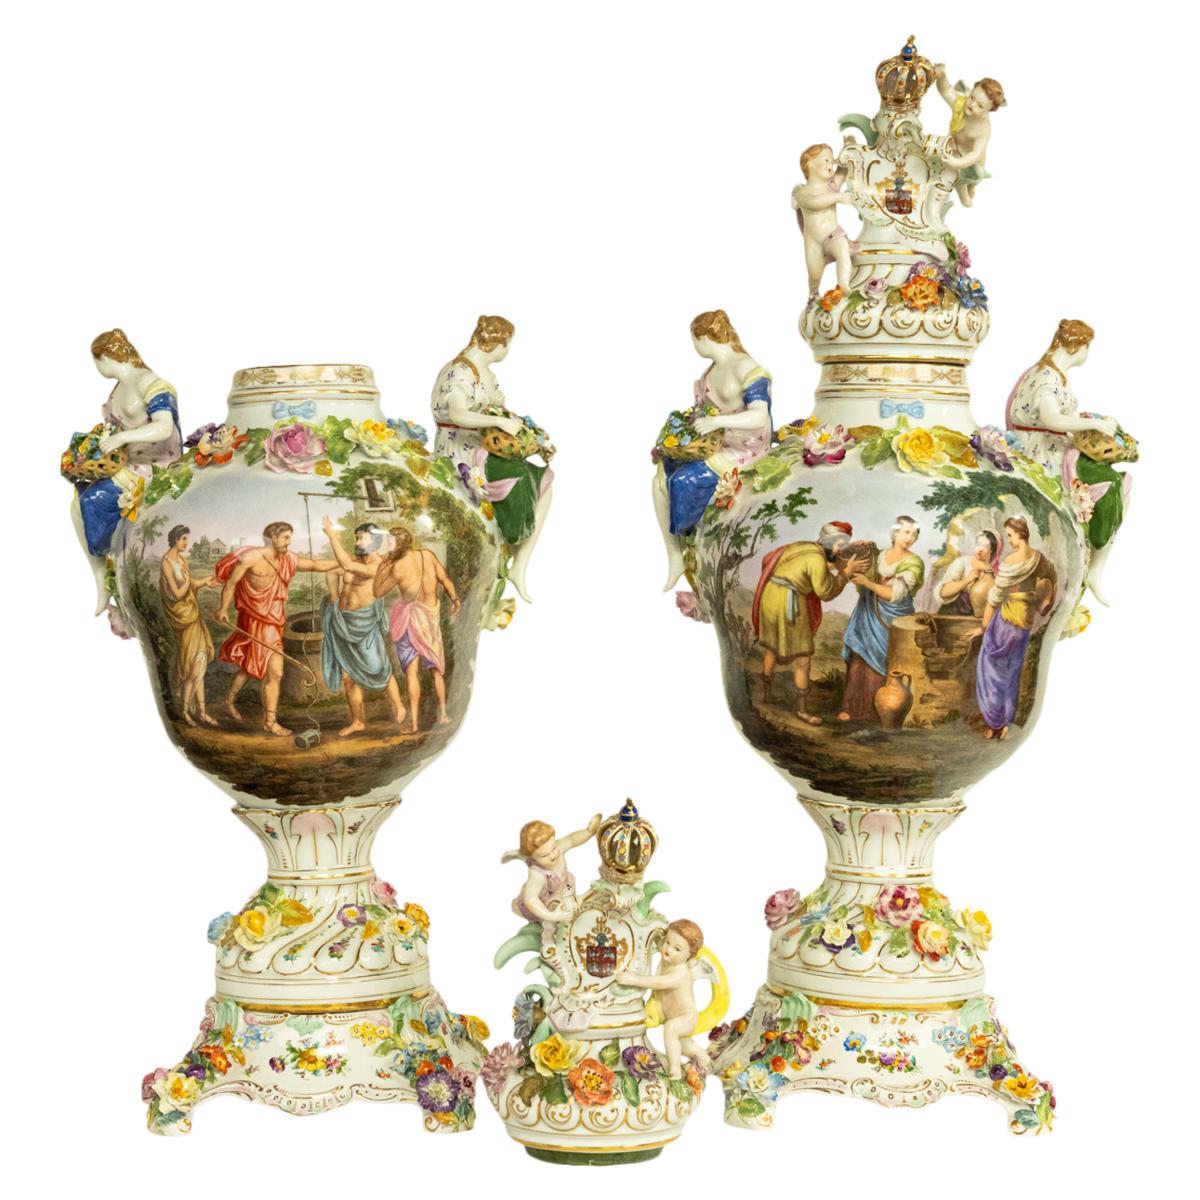 Très belle et monumentale paire d'urnes à couvercle en porcelaine sur piédestal de la fin du 19e siècle par Carl Thieme (Potschappel) vers 1880.
Les urnes sont en trois sections et sont très richement décorées, chaque couvercle ayant un fleuron doré